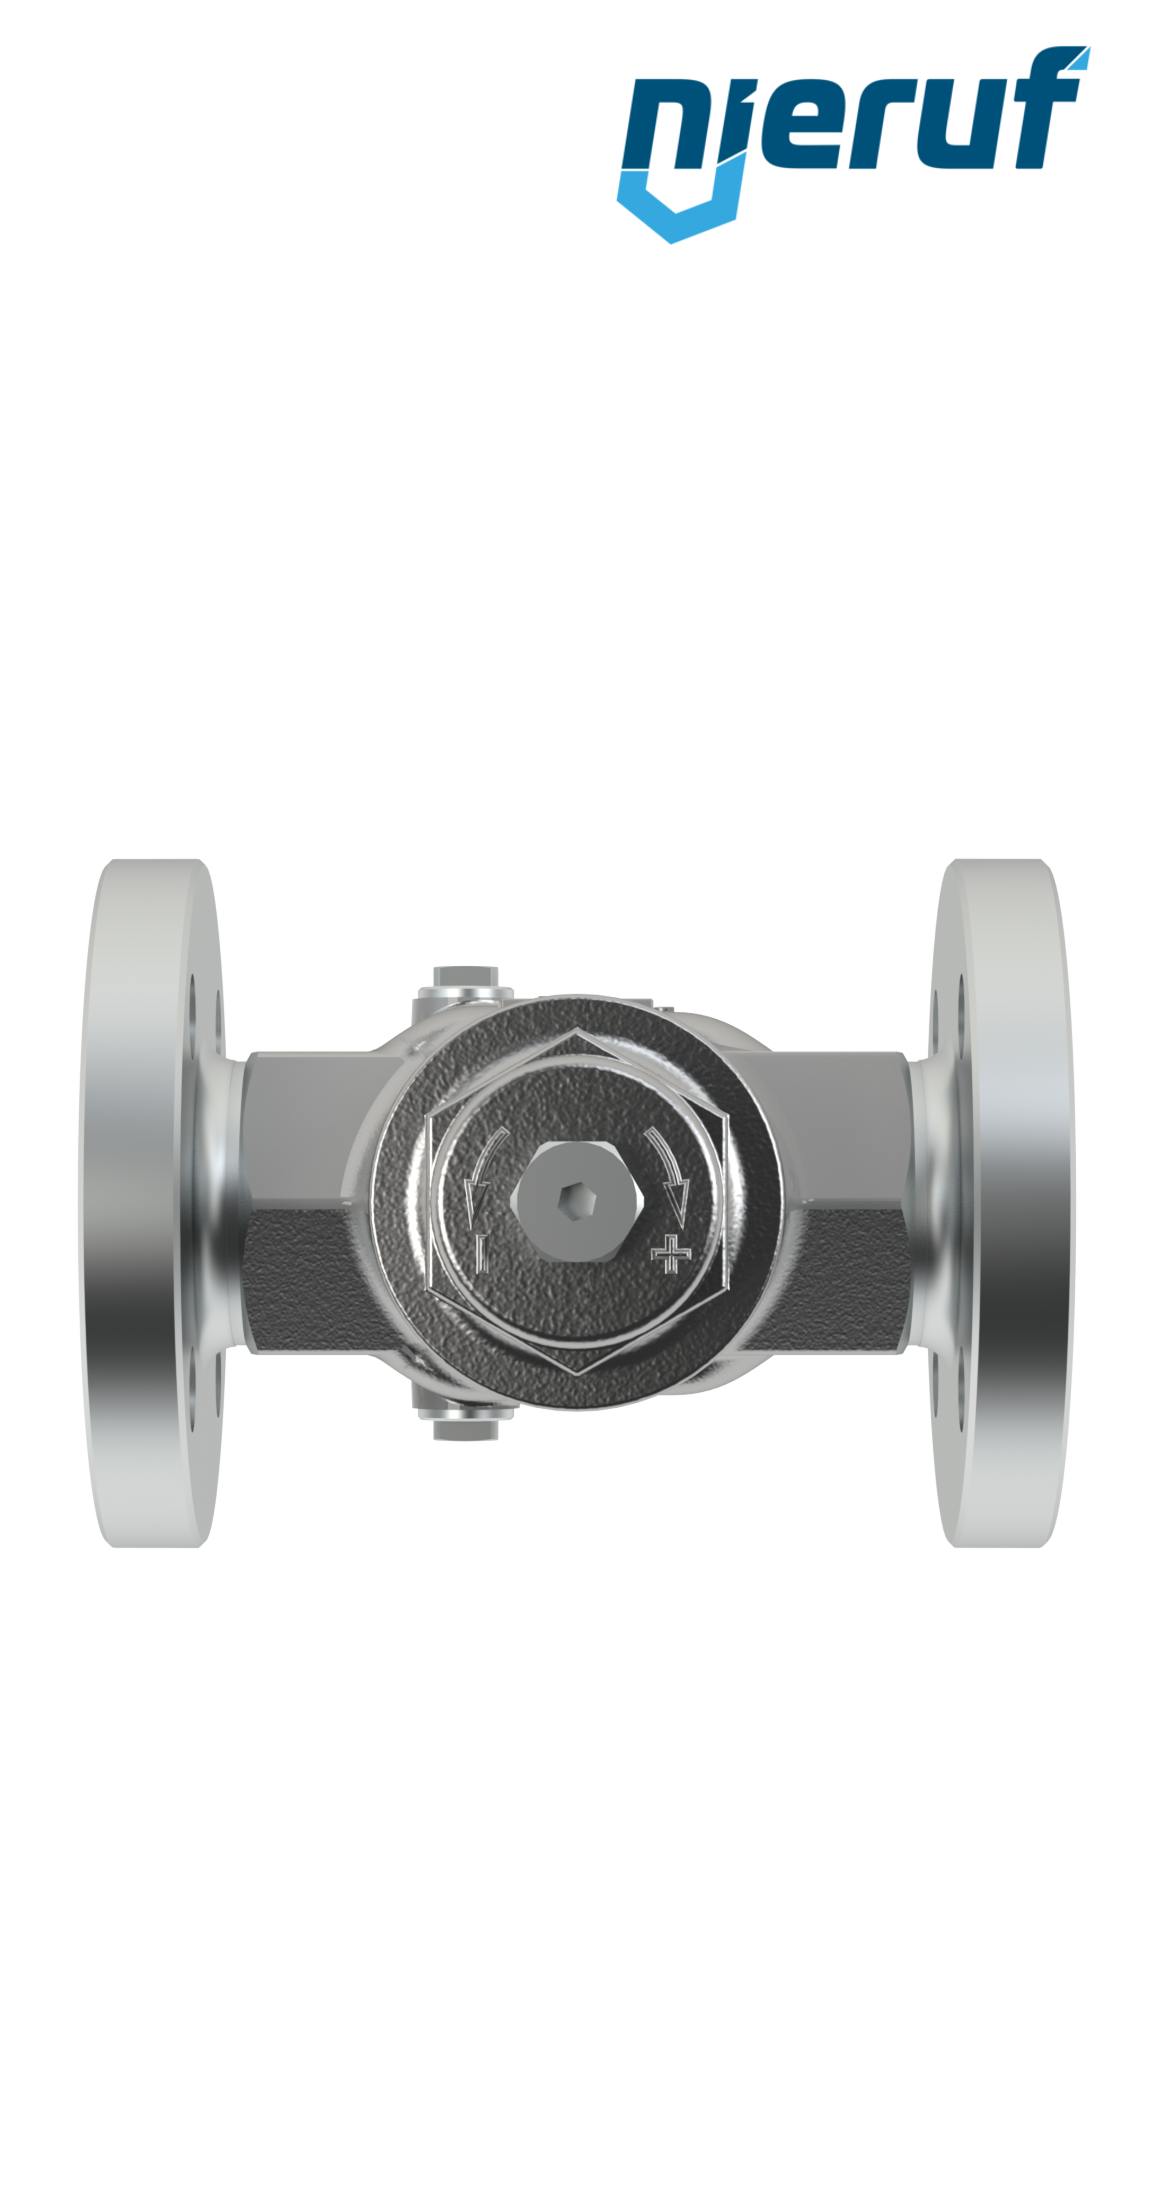 Piston-pressure reducing valve DN20 DM11 flange ANSI 150 stainless steel FPM / FKM 2.0 - 20.0 bar